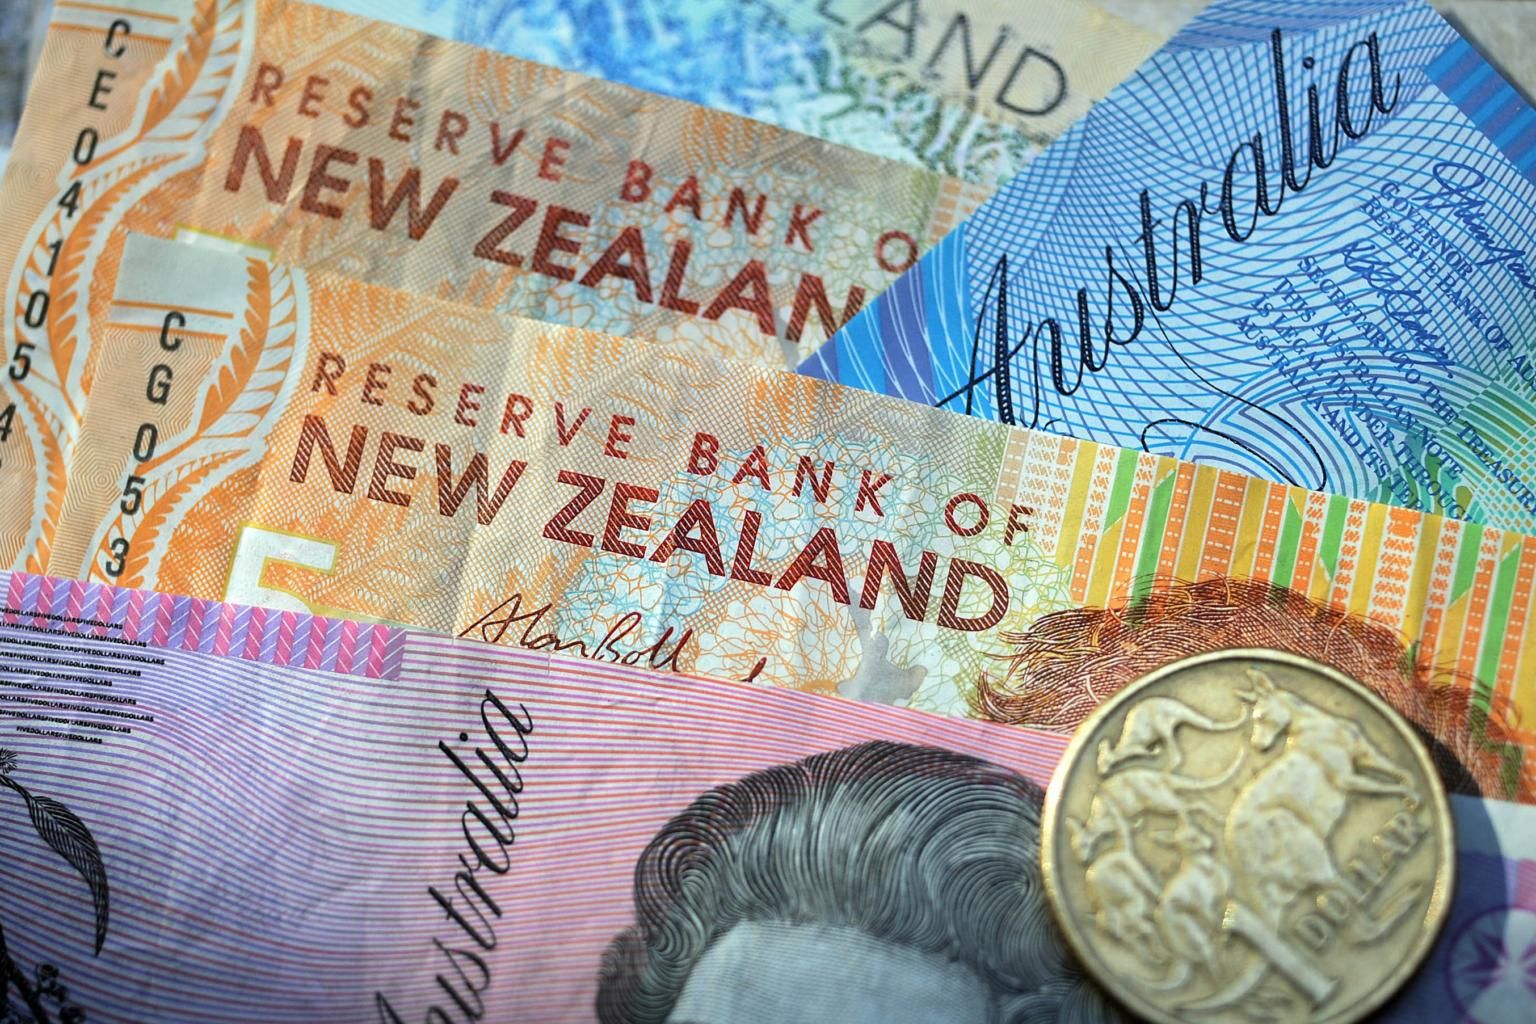 [BREAKING] Australian, New Zealand Dollars Dodge Downside Risk as Greenback Dips